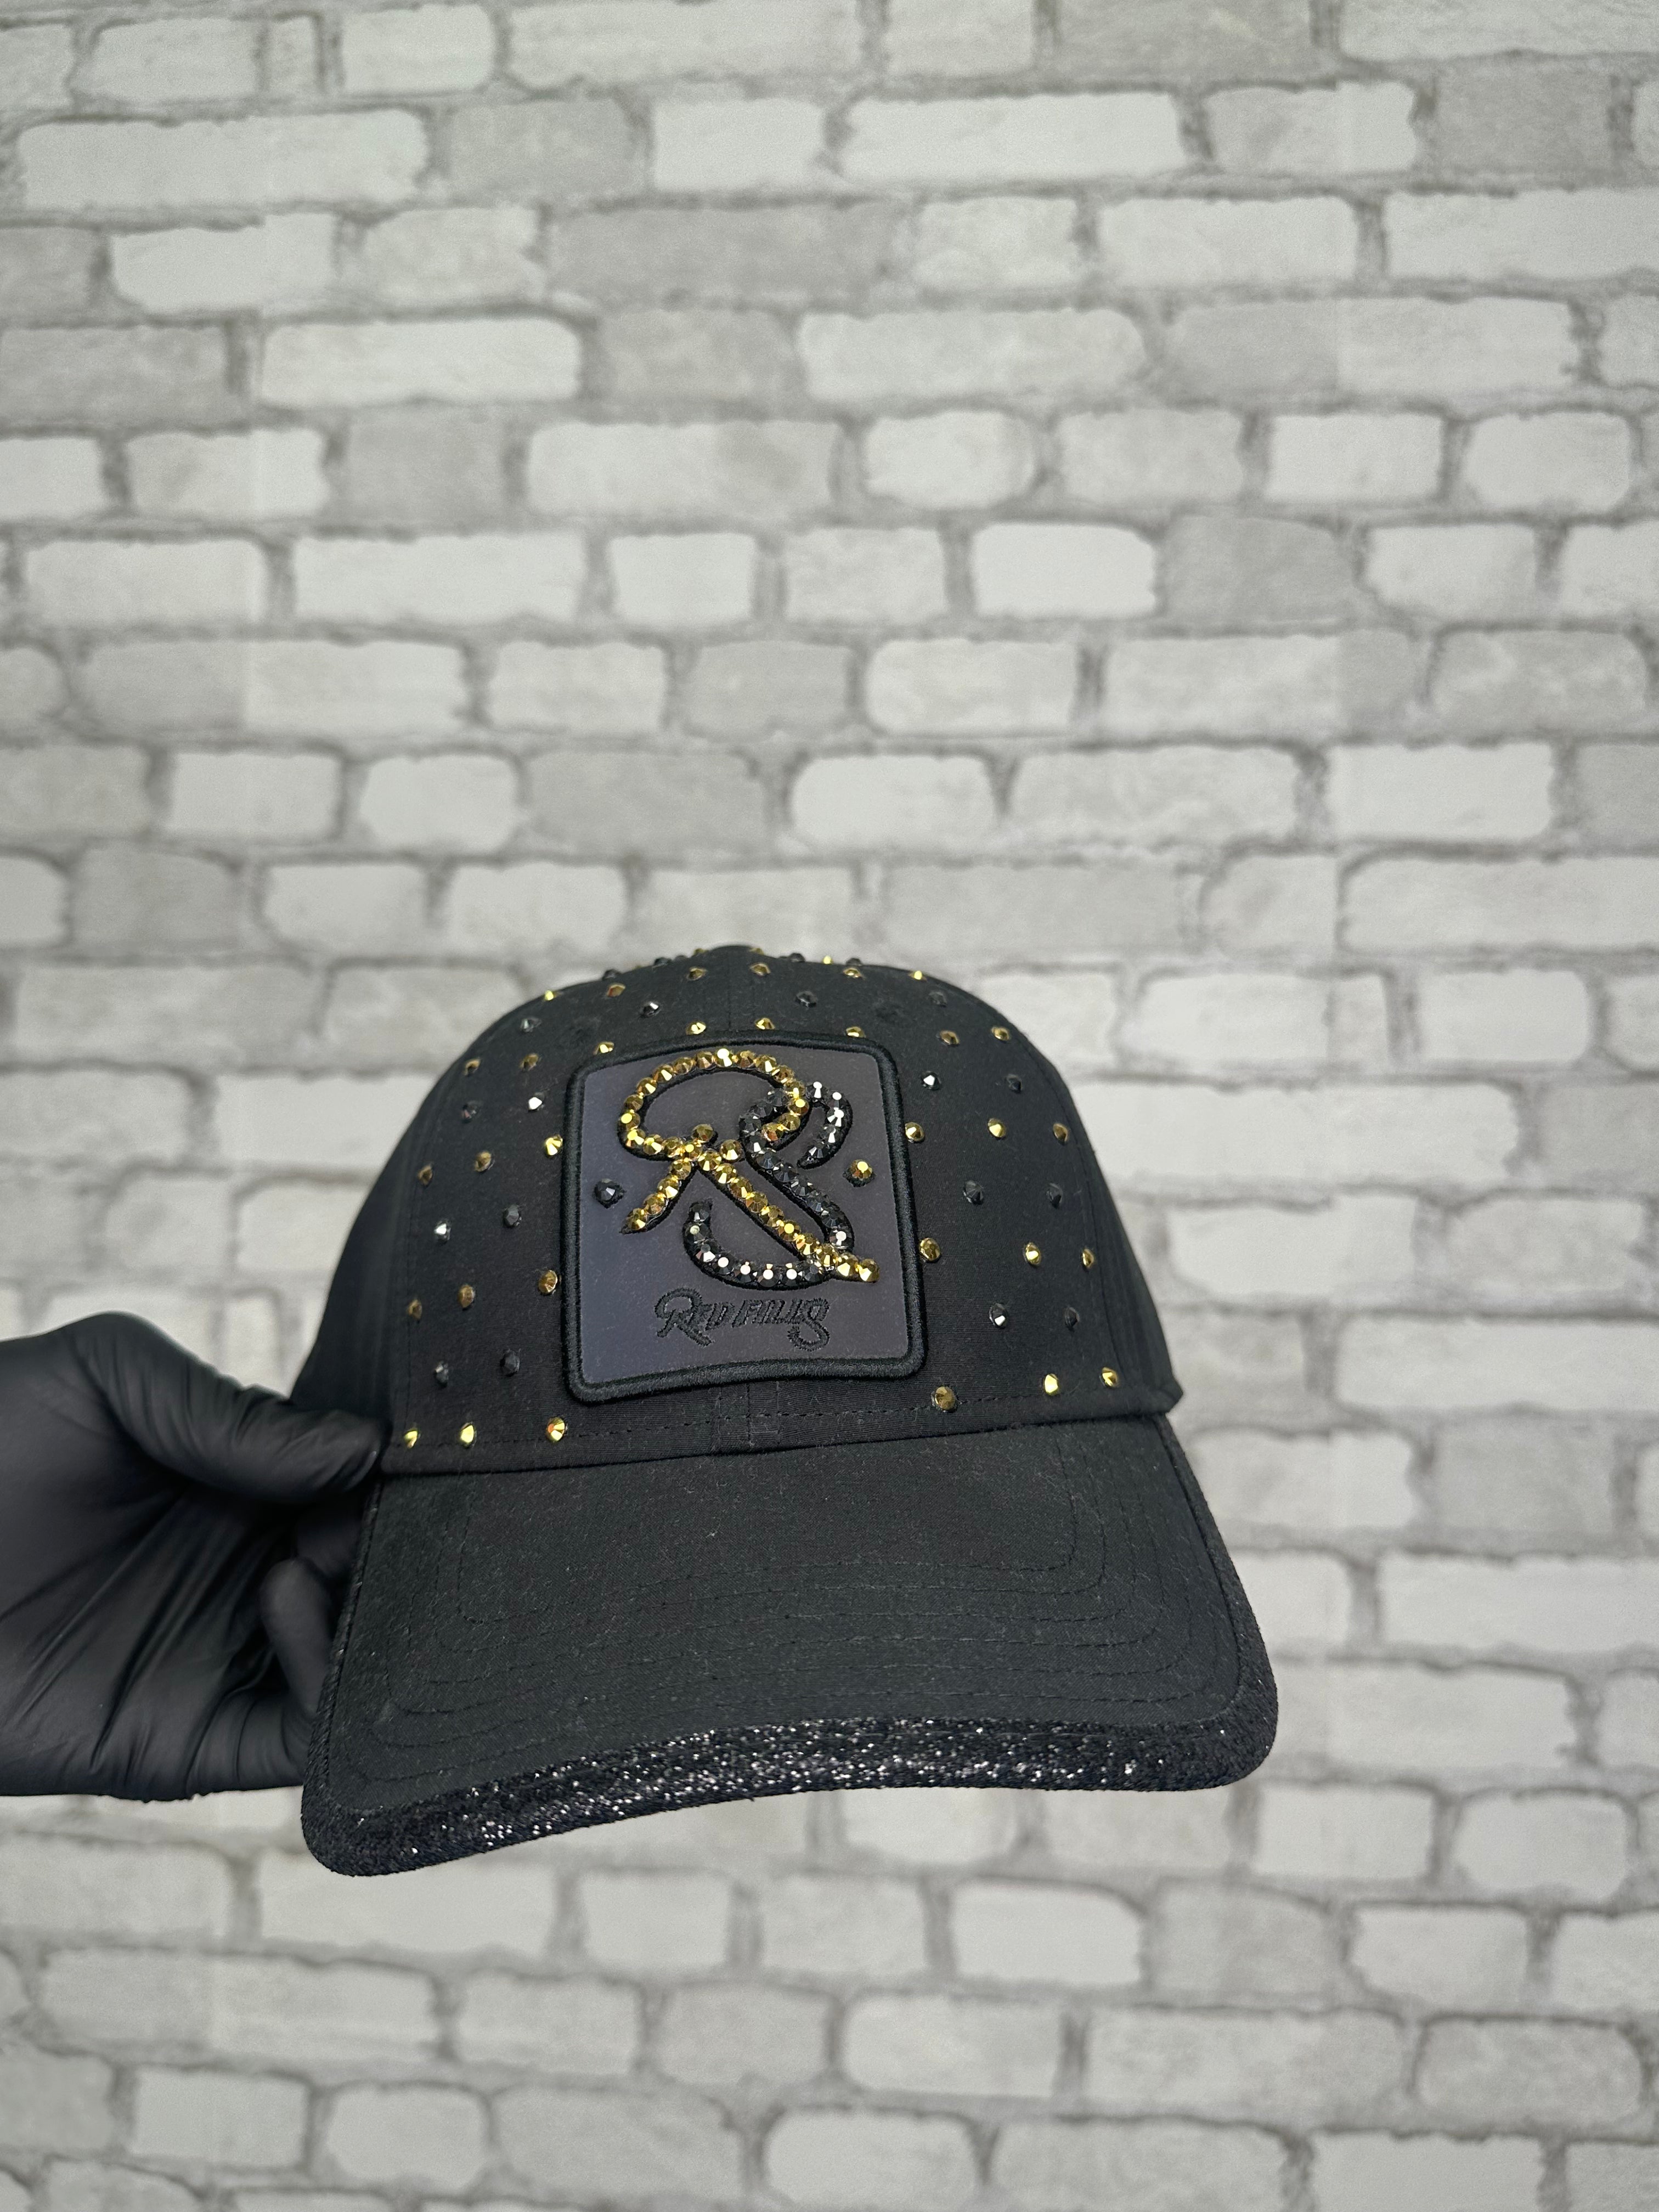 Redfills - RS Gold Deluxe Cap